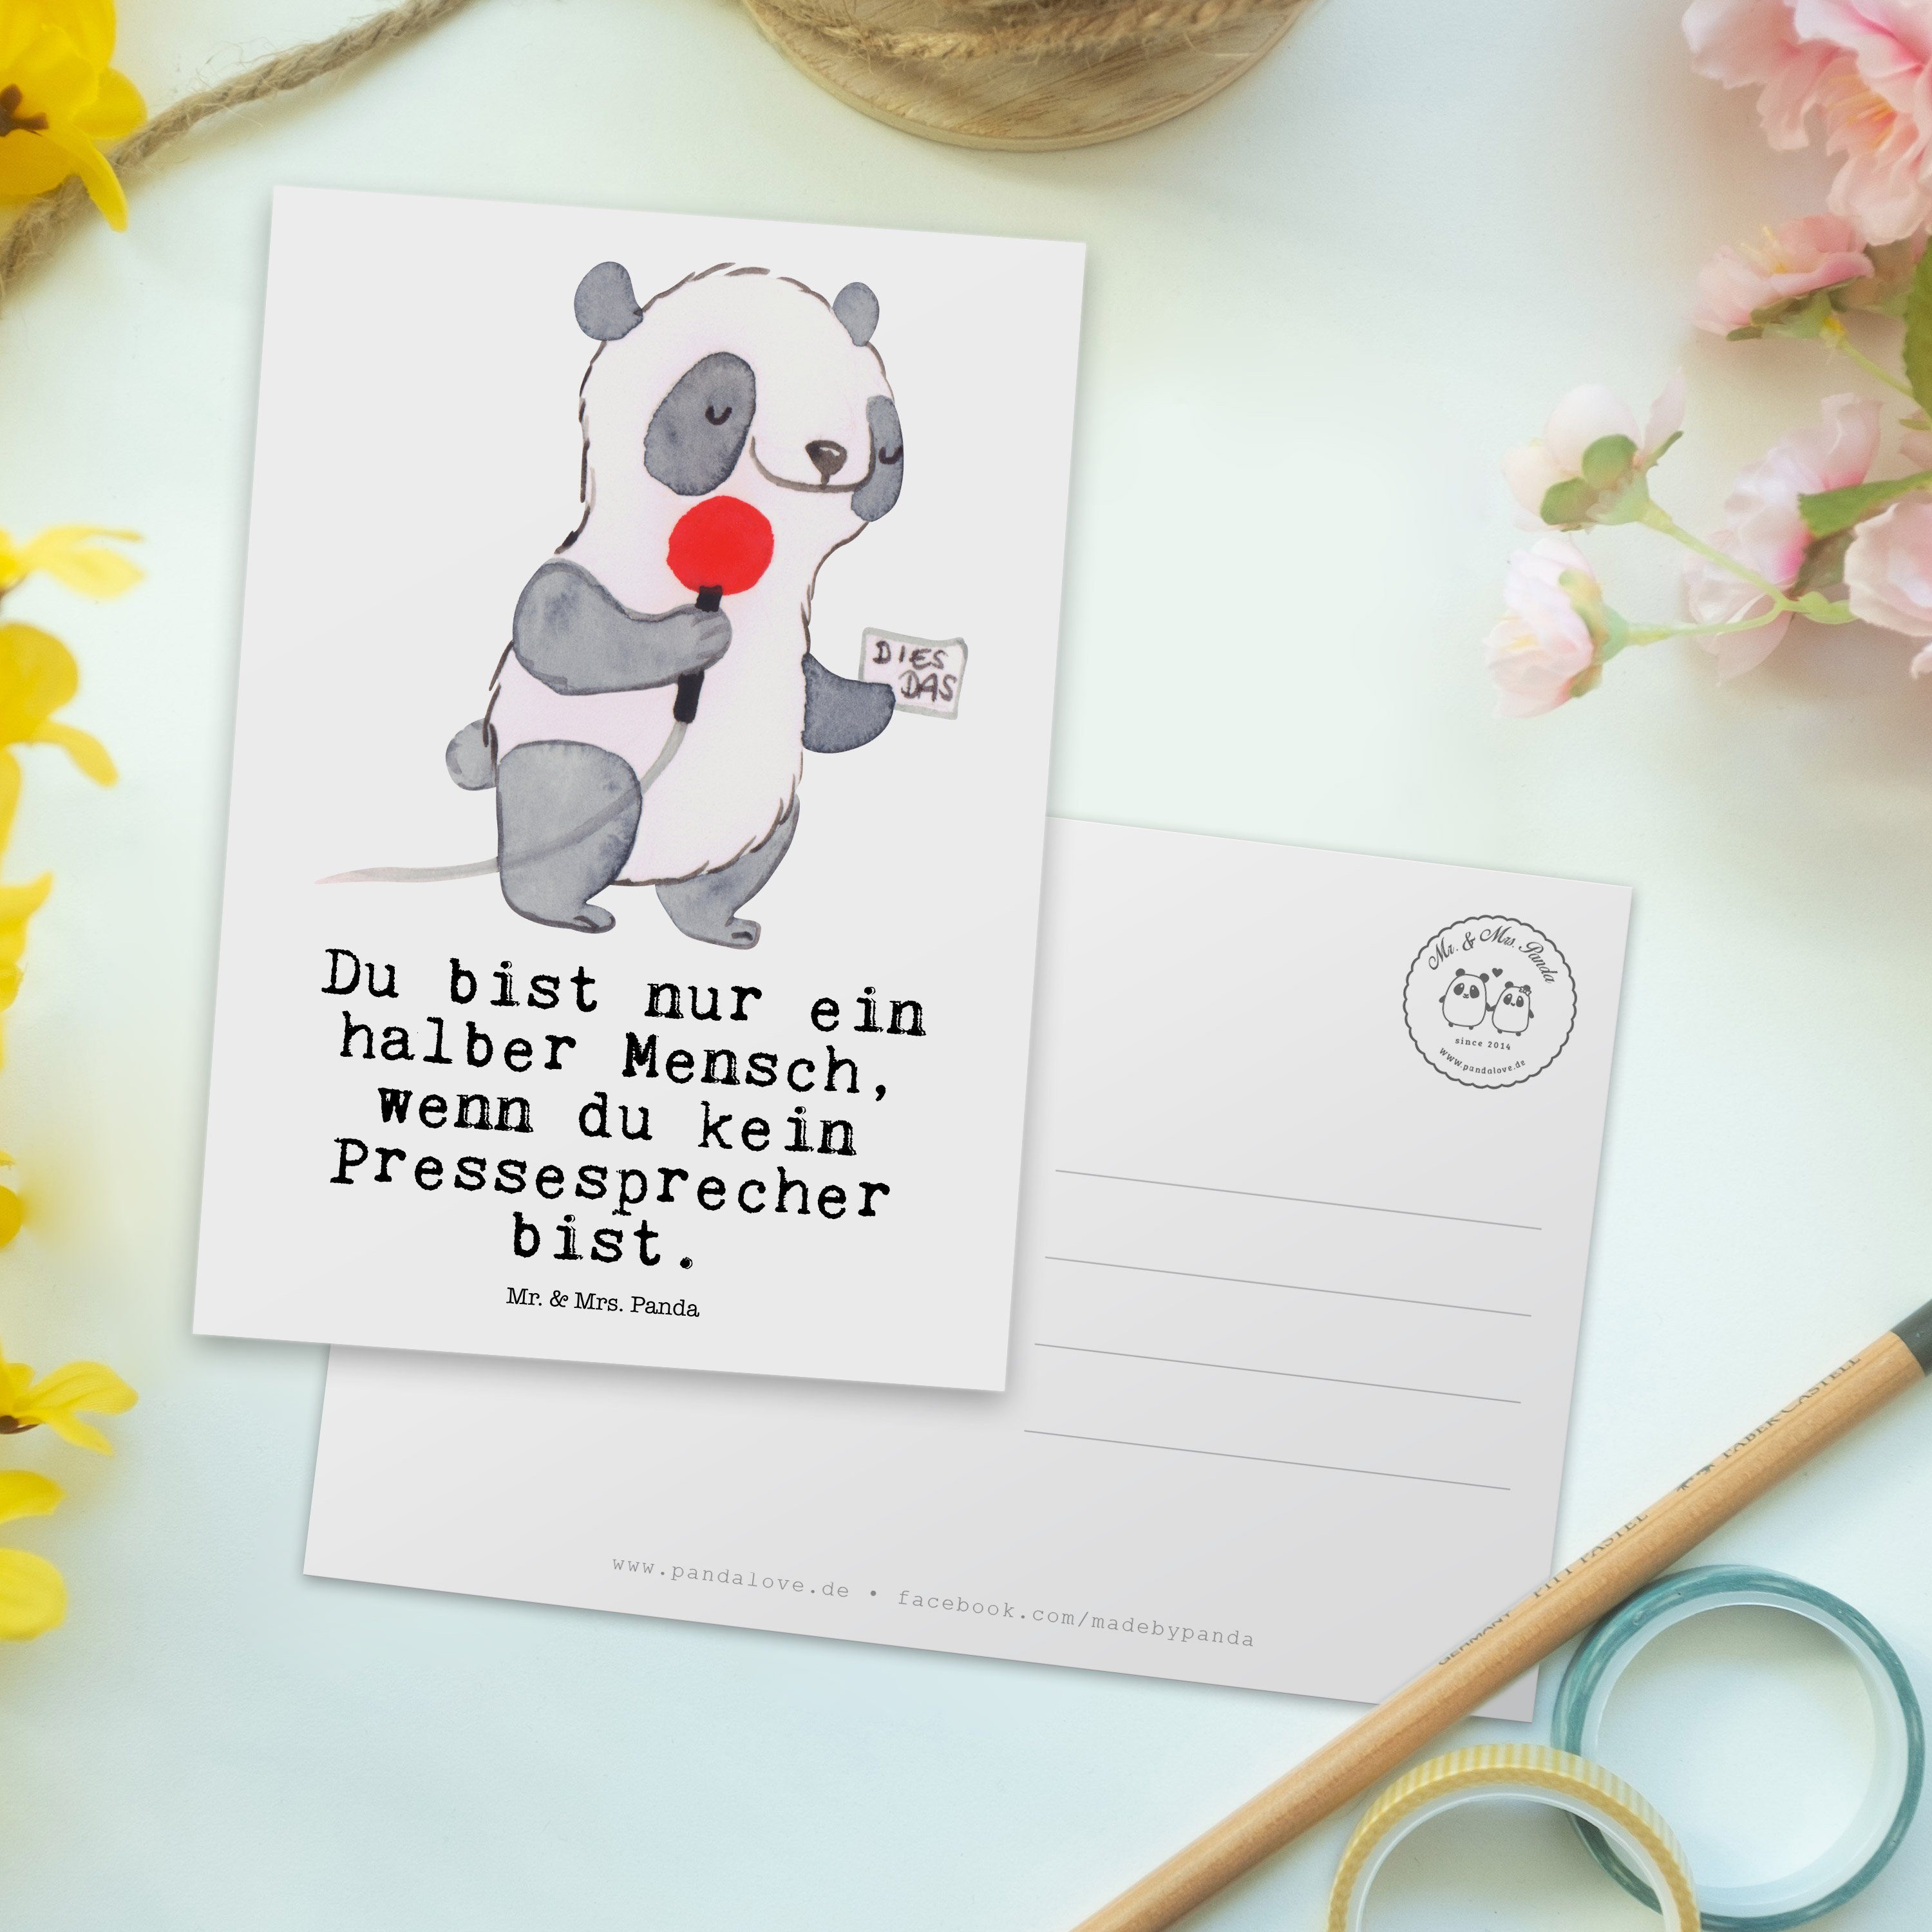 Abschied & Mr. mit - Postkarte Pressesprecher - Panda Weiß Grußkarte, Geschenk, Herz Karte, Mrs.